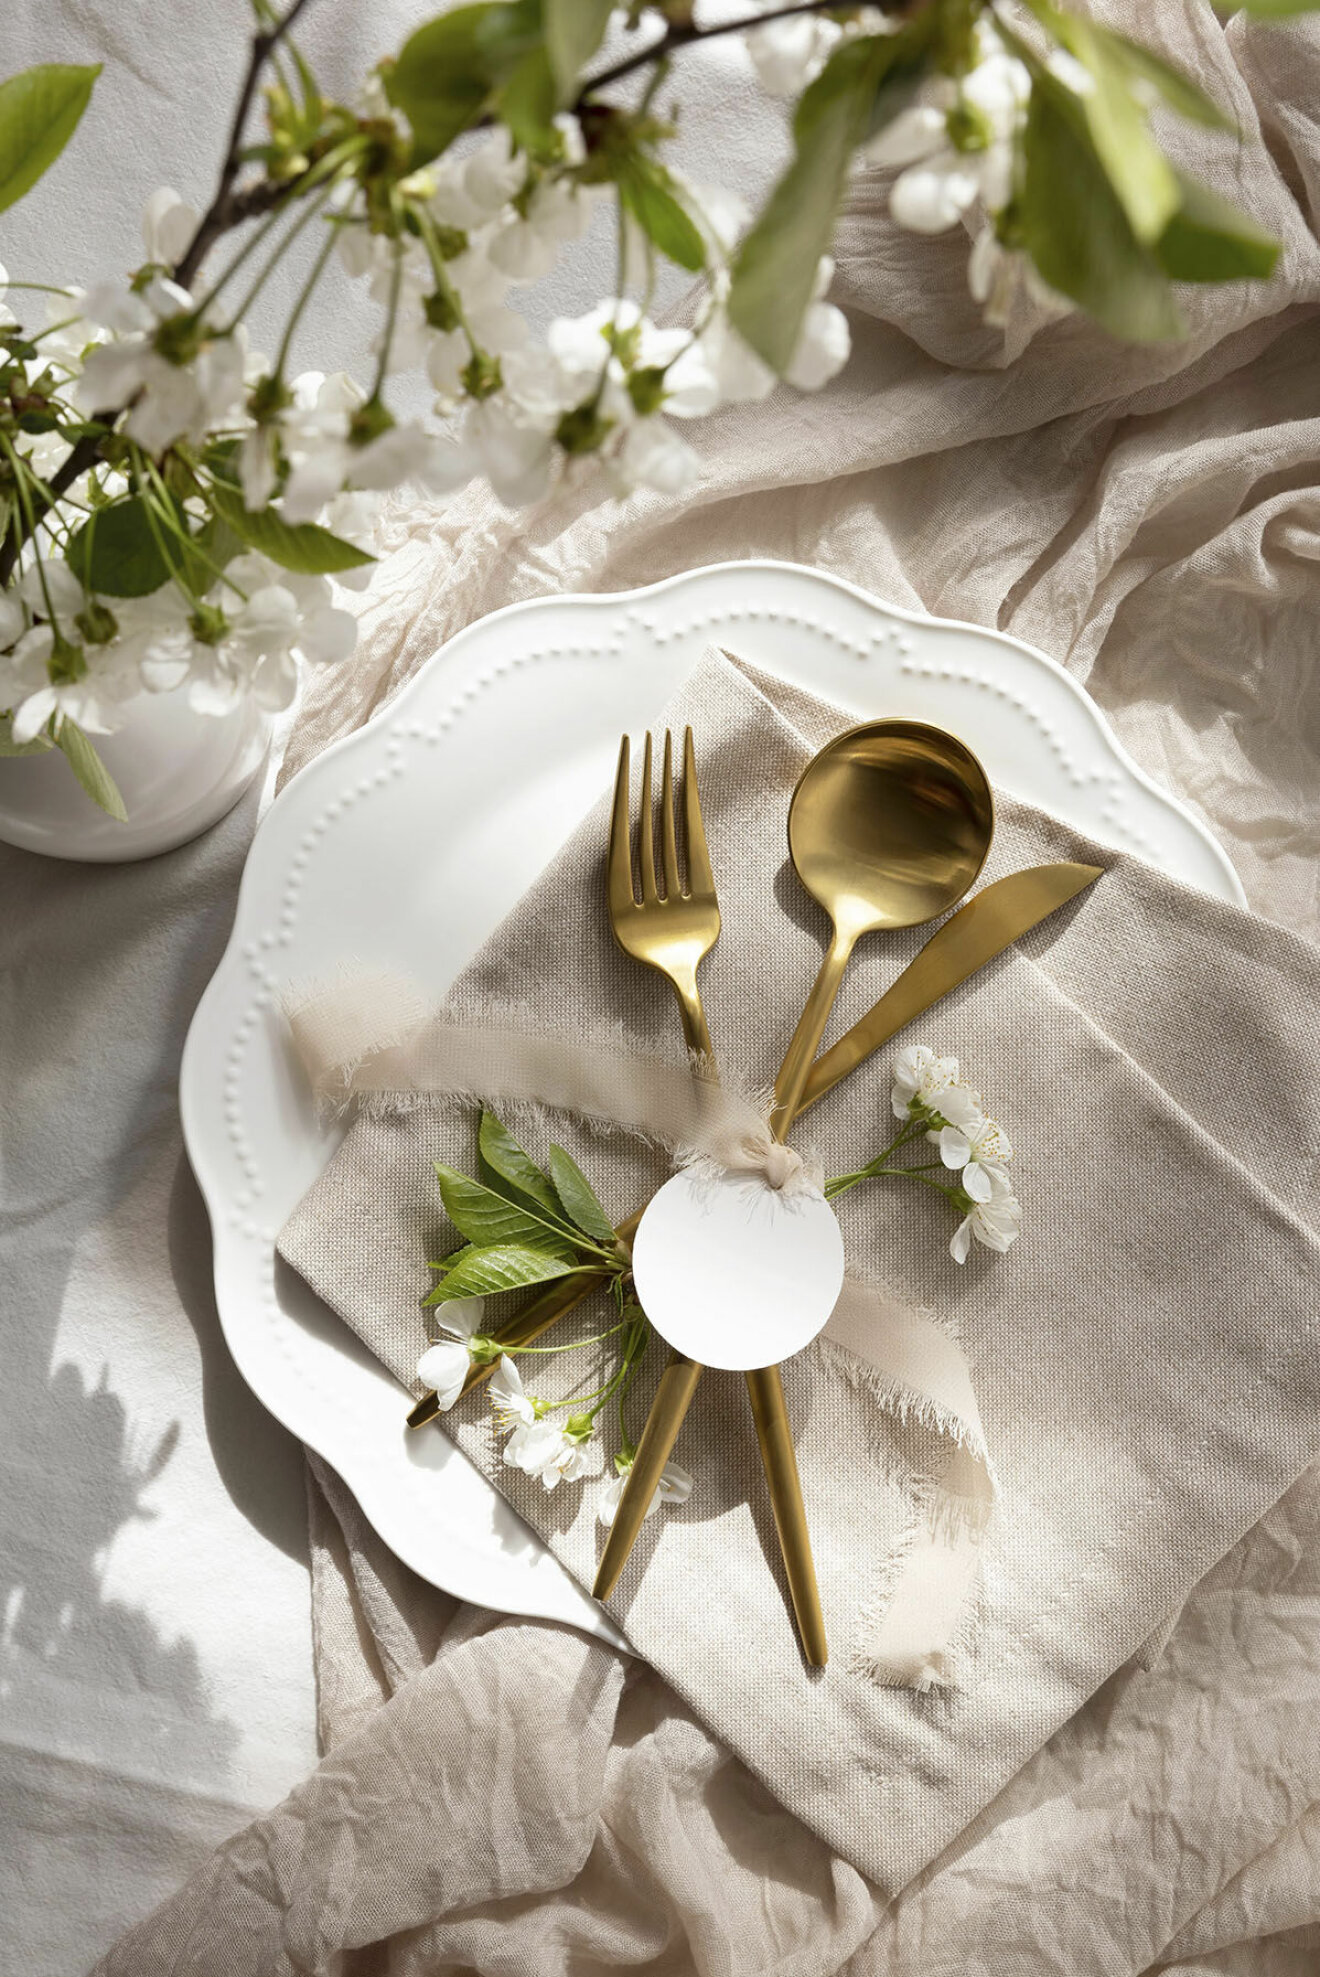 Personliga servetter är en kul minne för gästerna och en perfekt conversation starter vid middagen